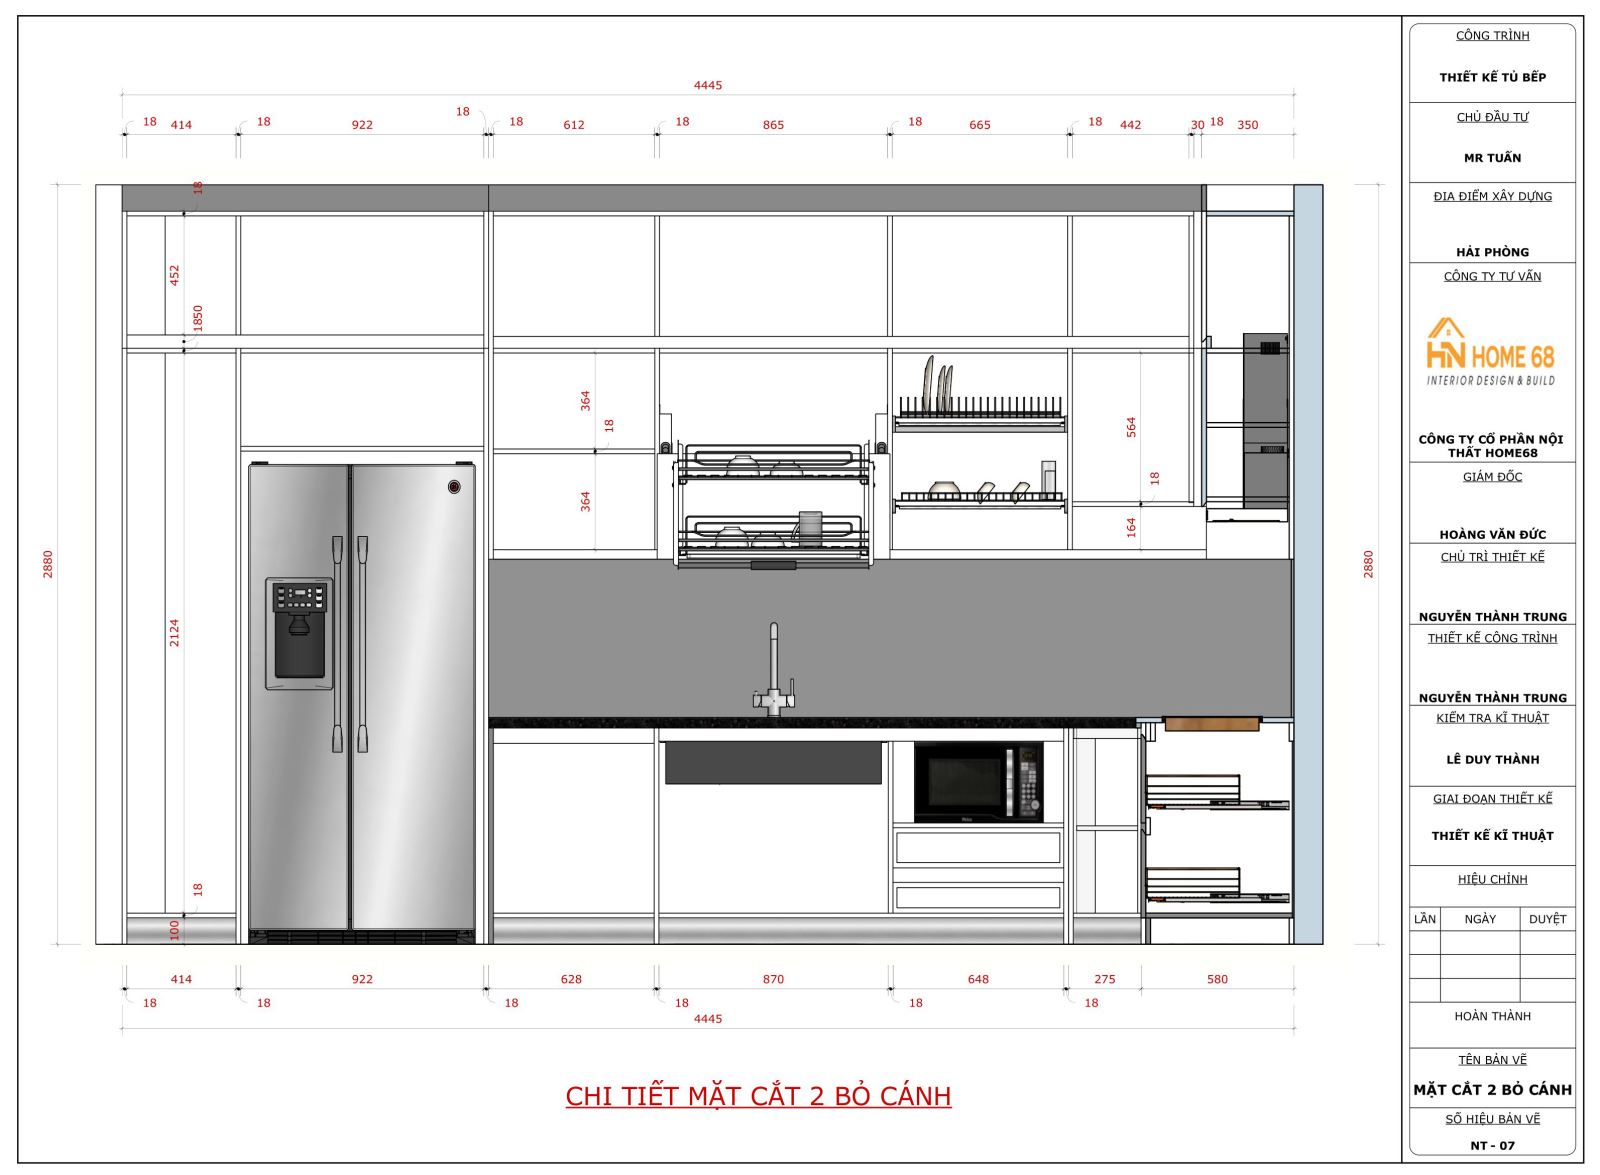 Tủ bếp thiết kế hiện đại với hệ thống phụ kiện và thiết bị đi kèm do HOME68 phân phối